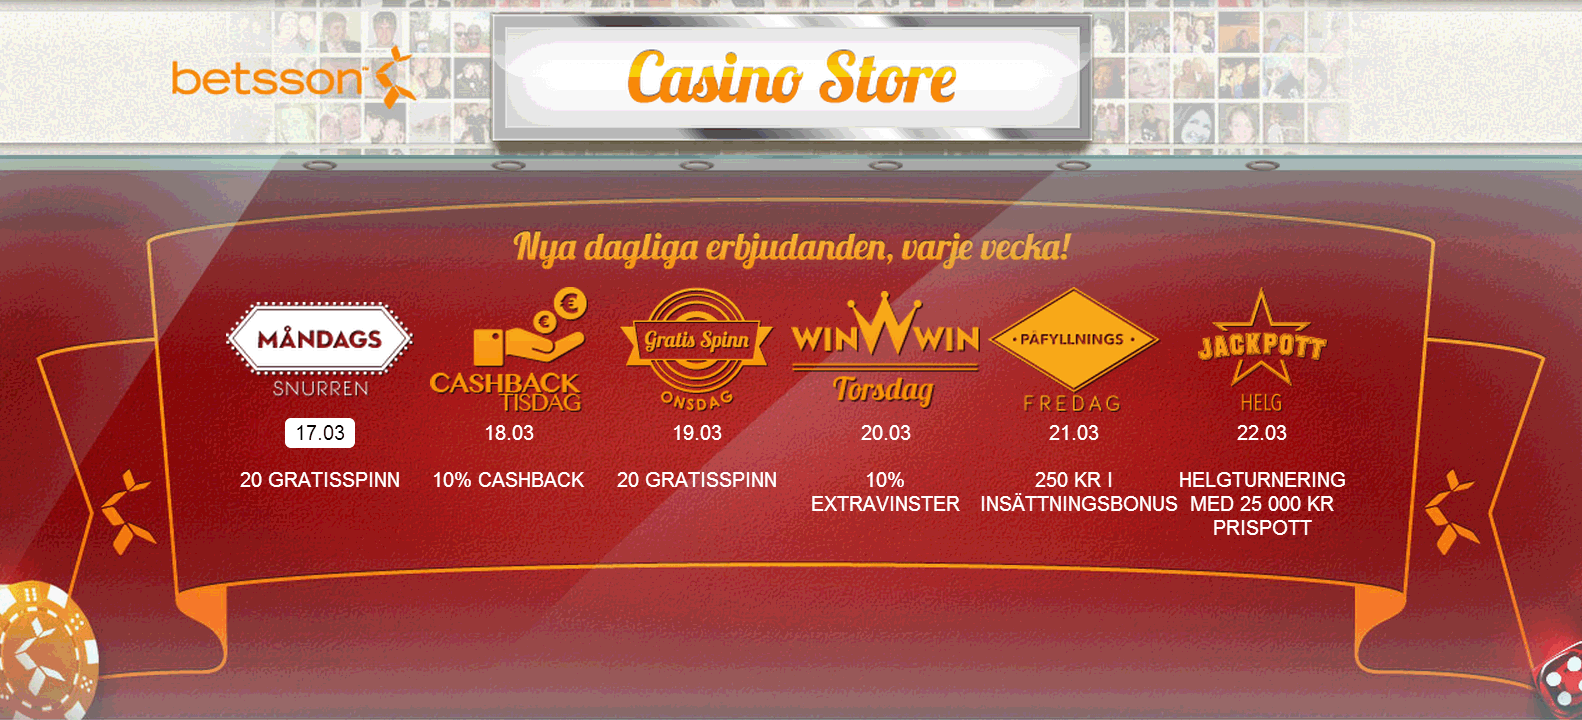 Helgens casino erbjudande - 1040